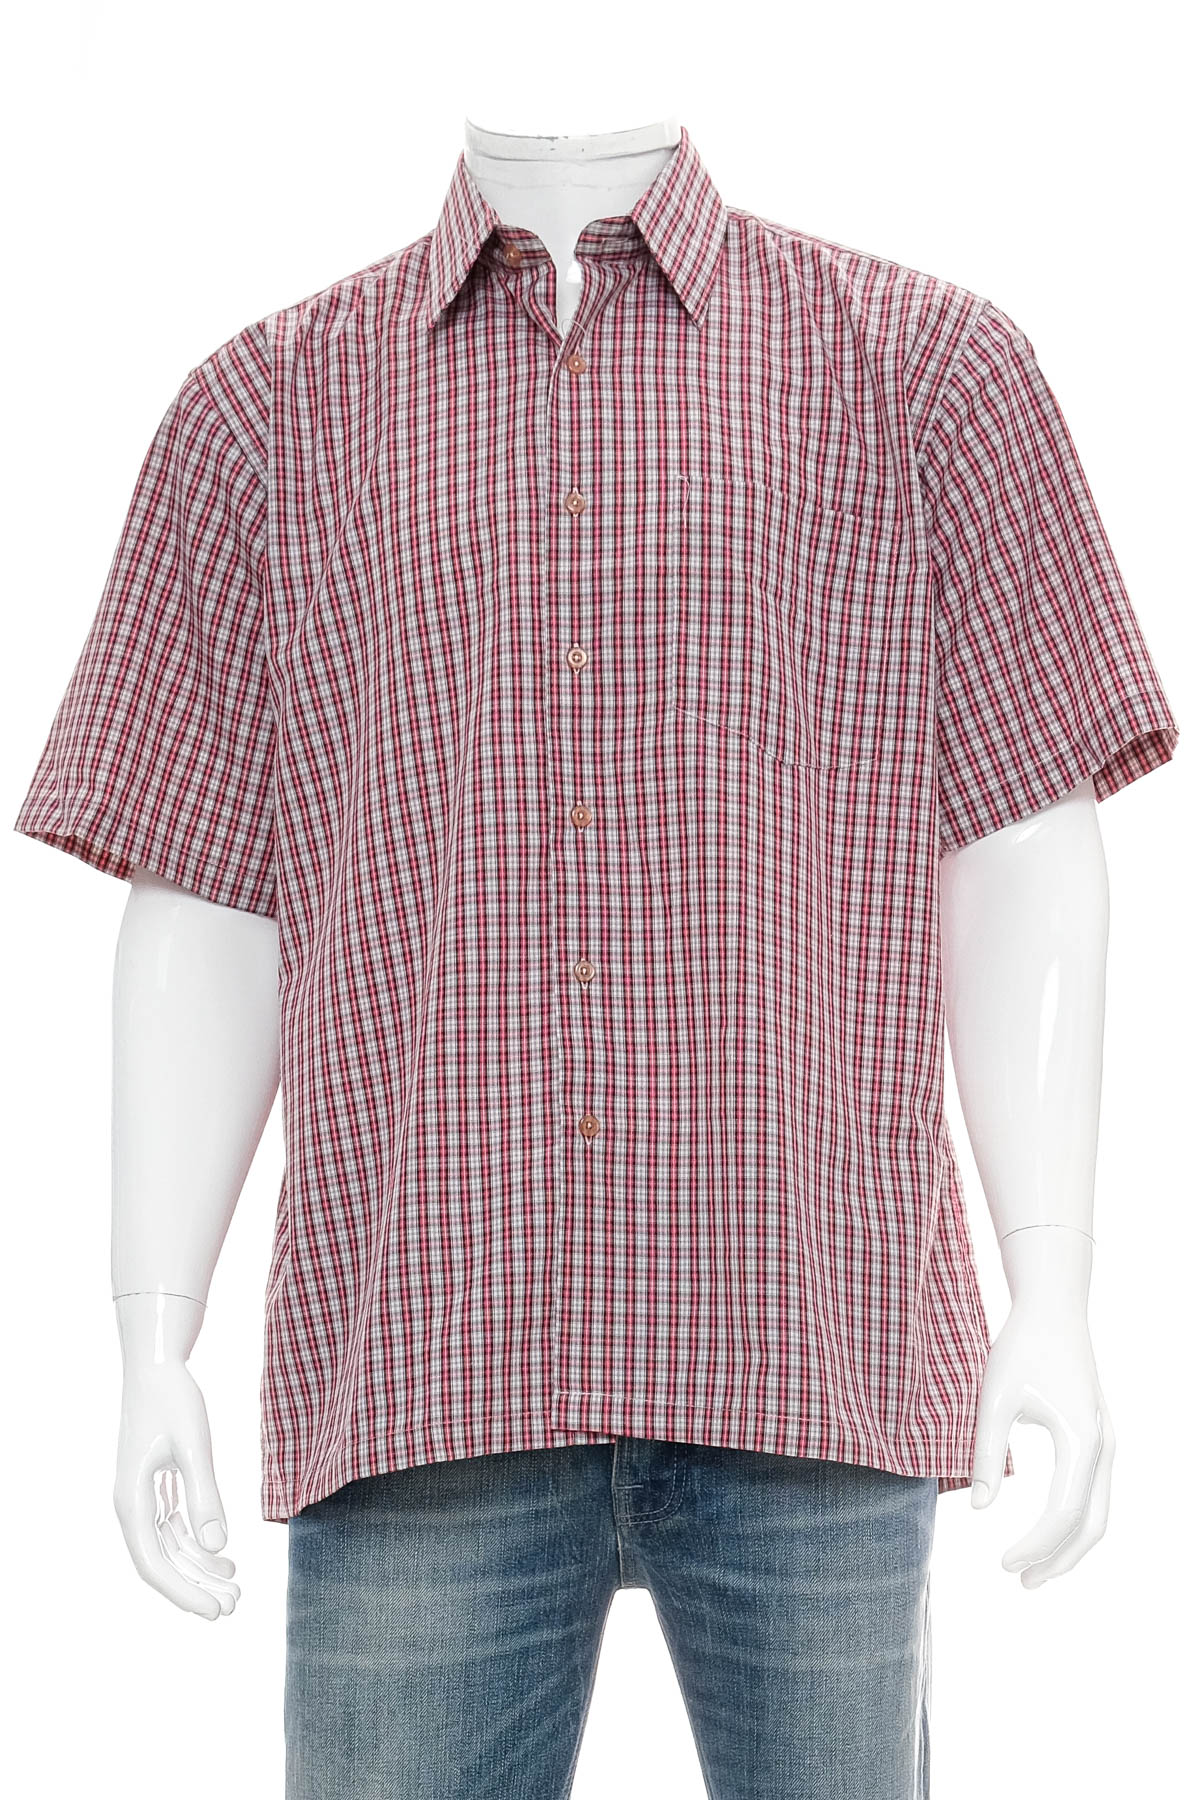 Ανδρικό πουκάμισο - Avant Garde - 0